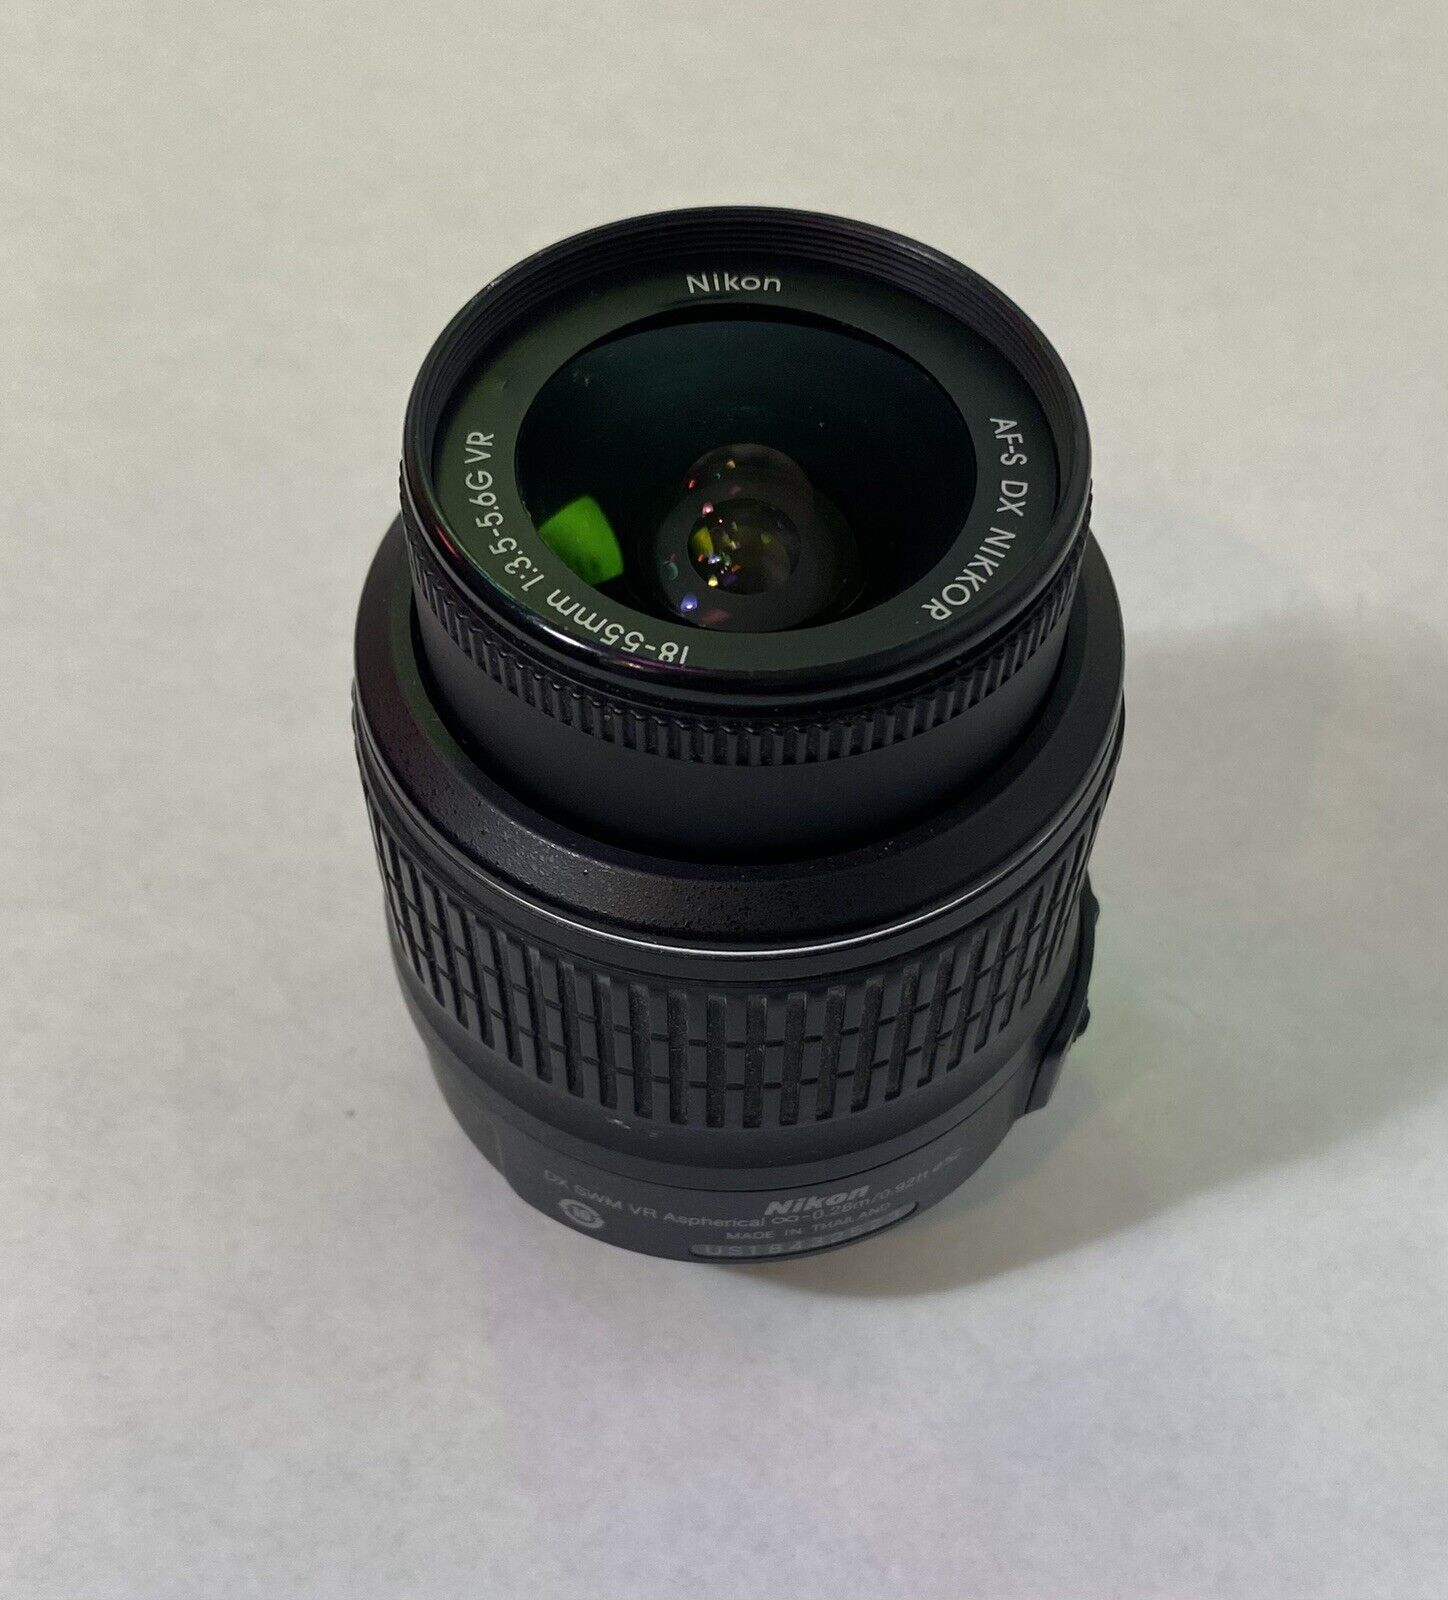 Nikon AF-S NIKKOR 18-55mm f/3.5-5.6G DX SWM VR Aspherical Camera Lens